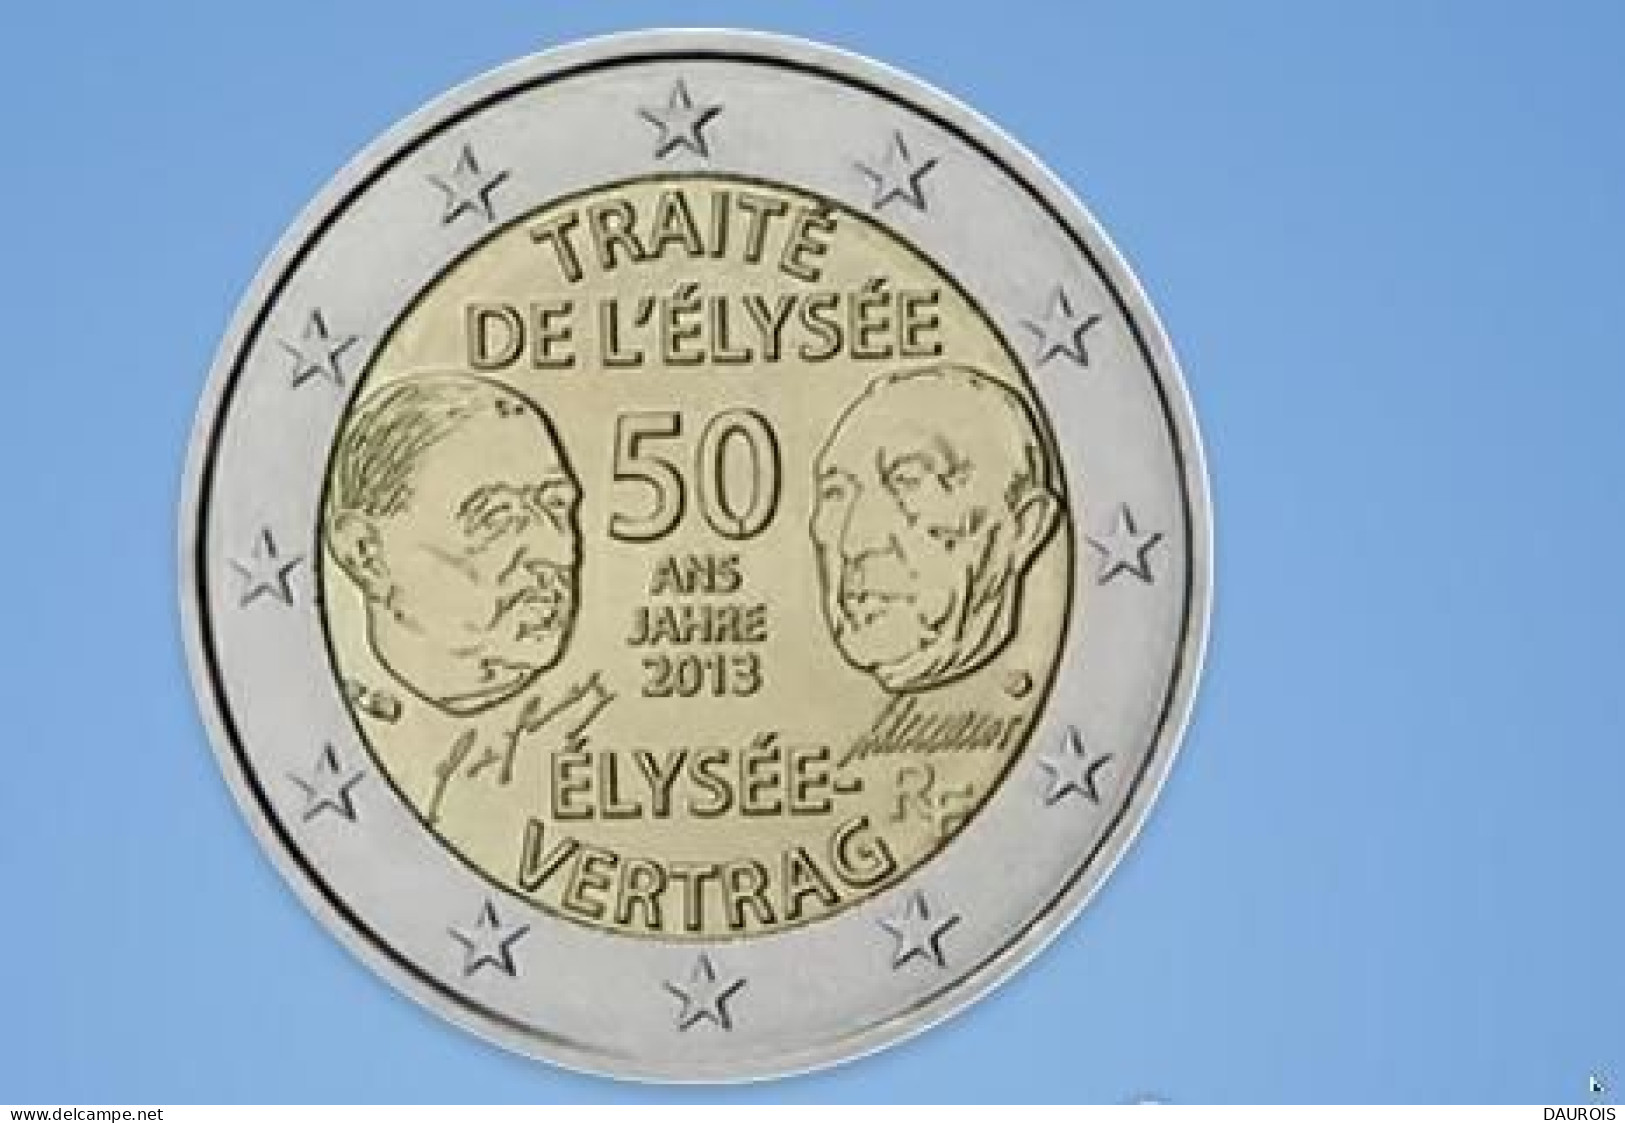 Série complète 2013 - 20 pièces 2 euro commémoratives